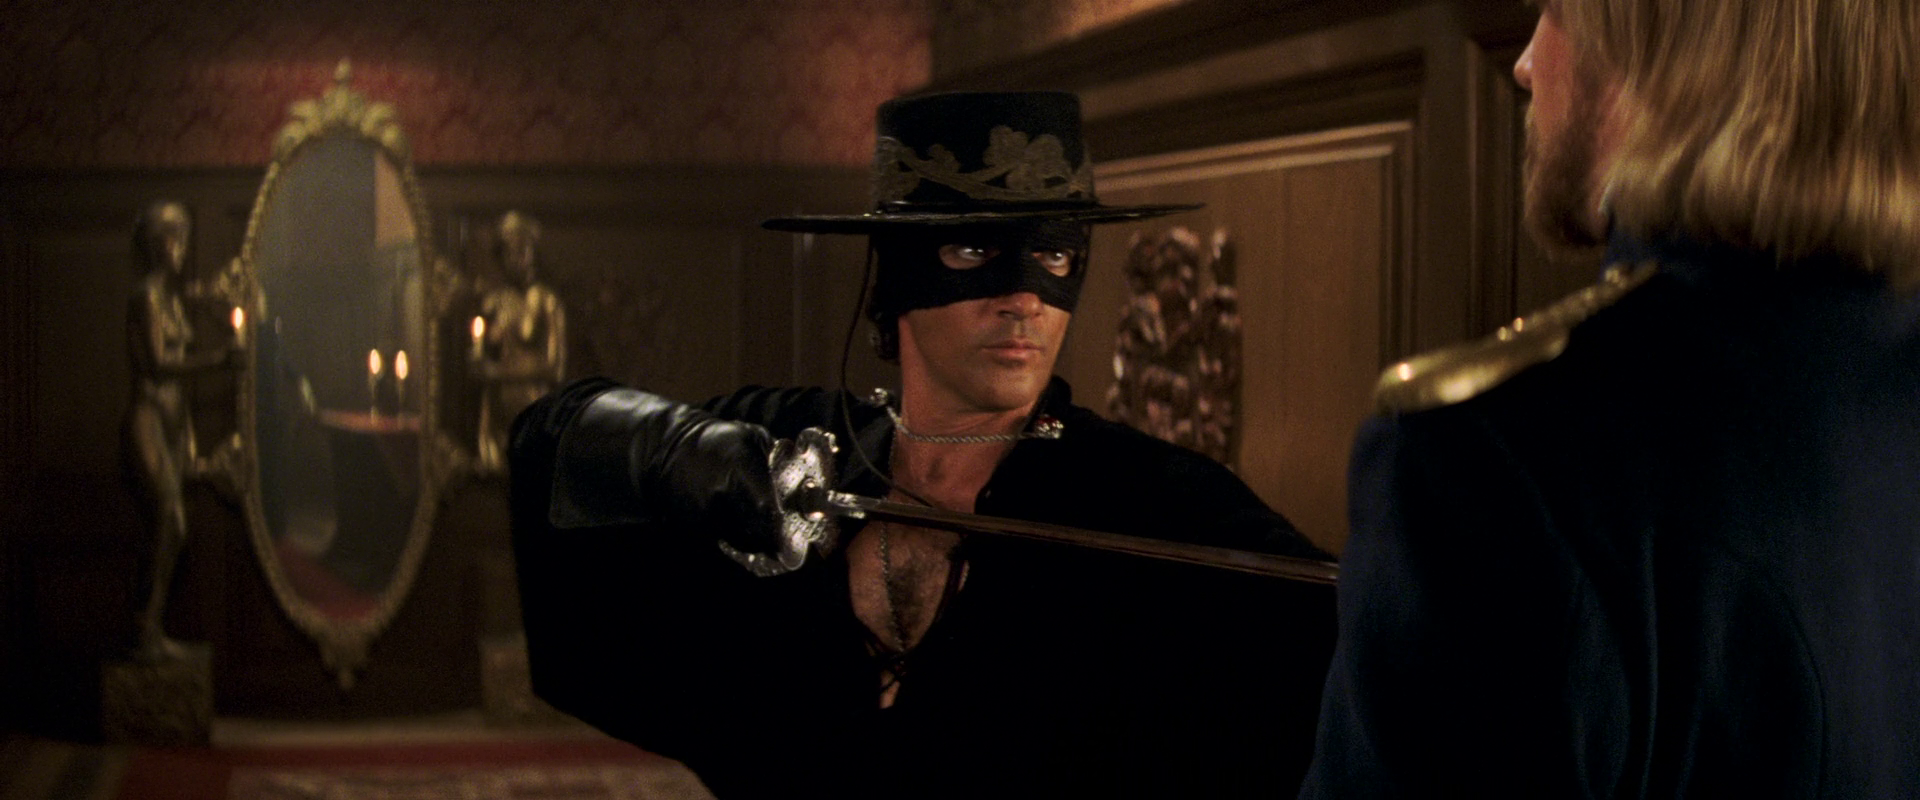 The Mask Of Zorro 1080p BDRip Full HD